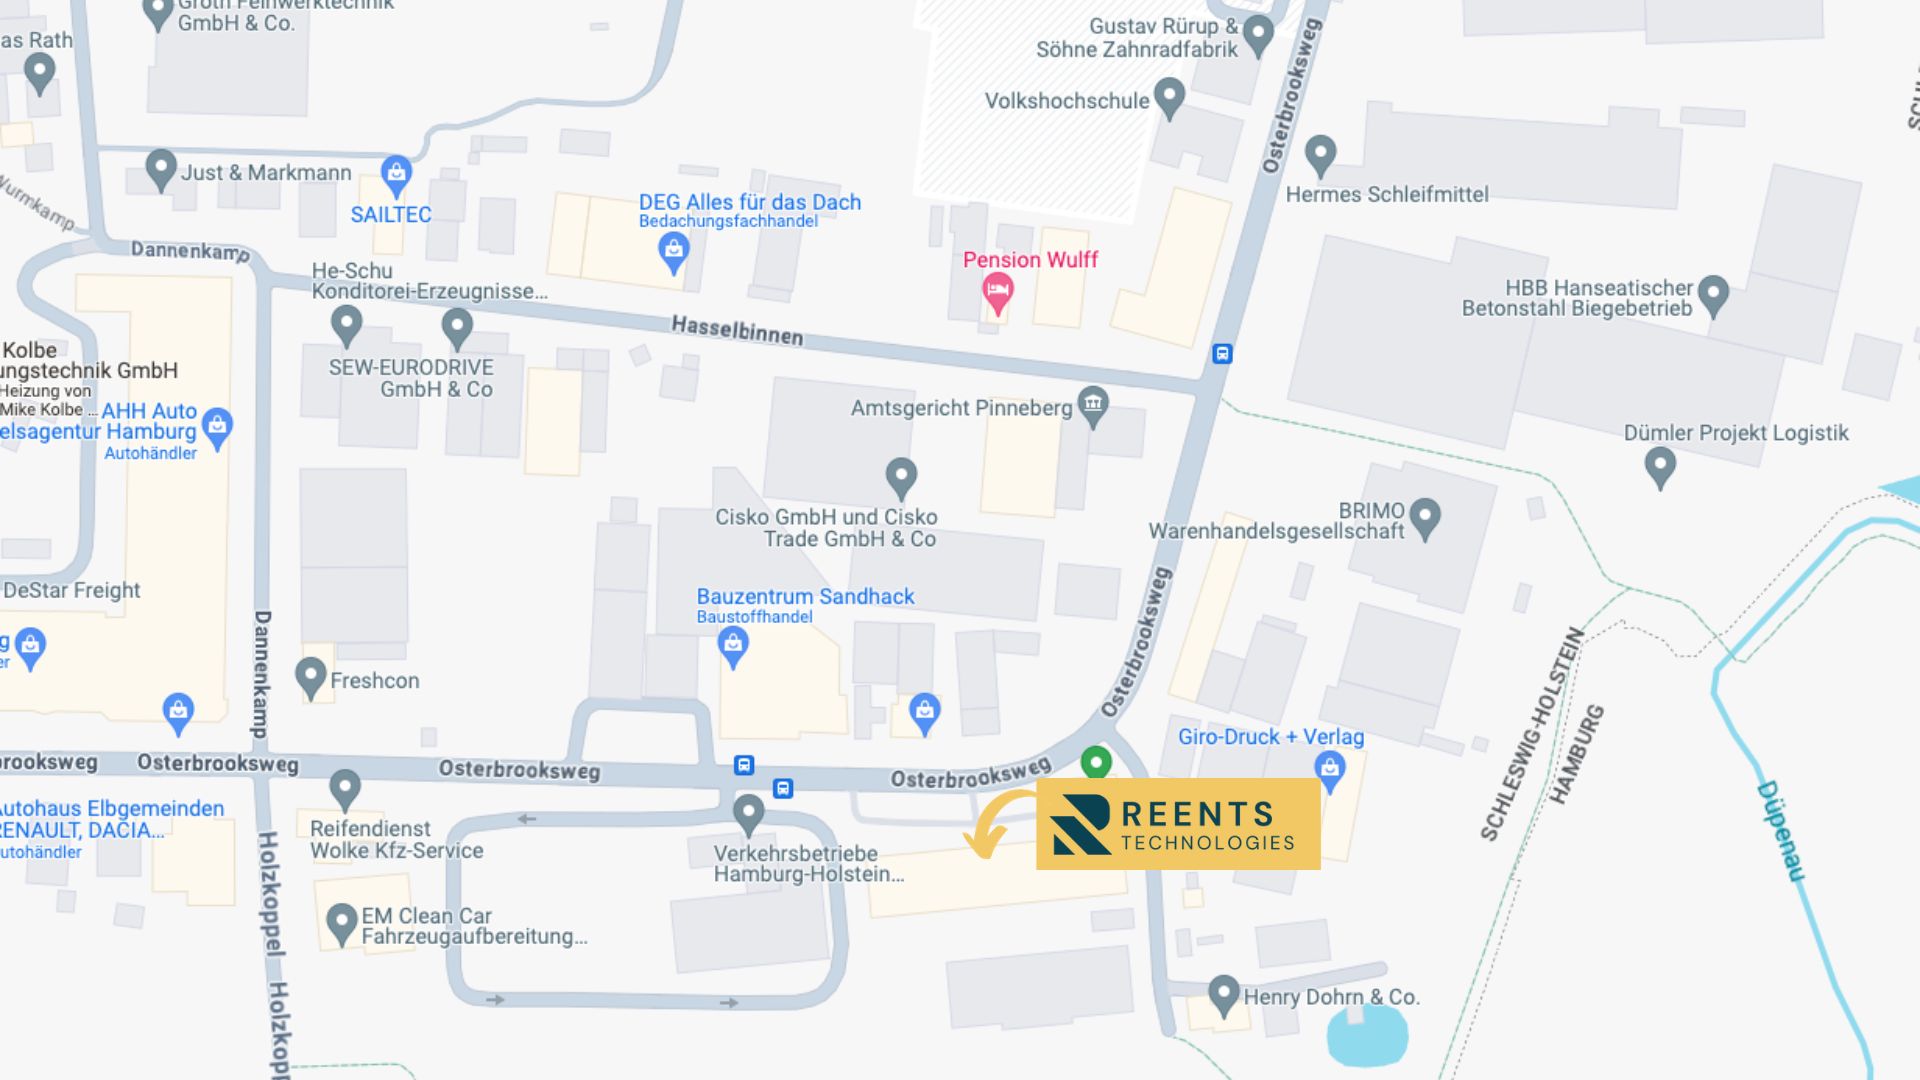 Google Maps Anzeige der Reents Technologies GmbH